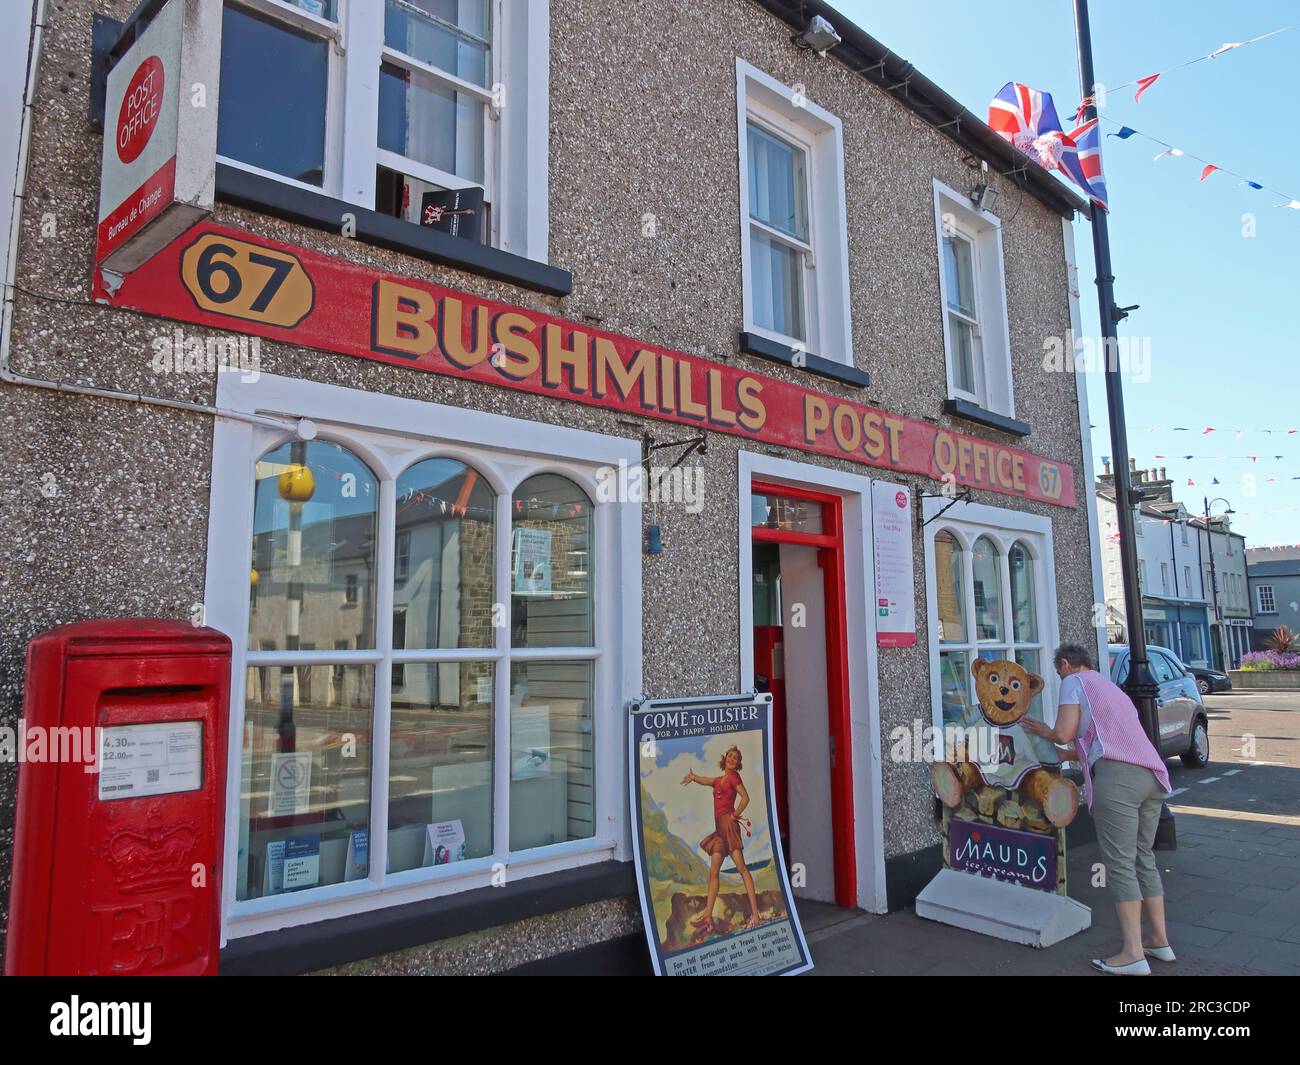 Bushmills Post Office, 67 main St, Bushmills, Comté d'Antrim, Irlande du Nord, ROYAUME-UNI, BT57 8QB Banque D'Images